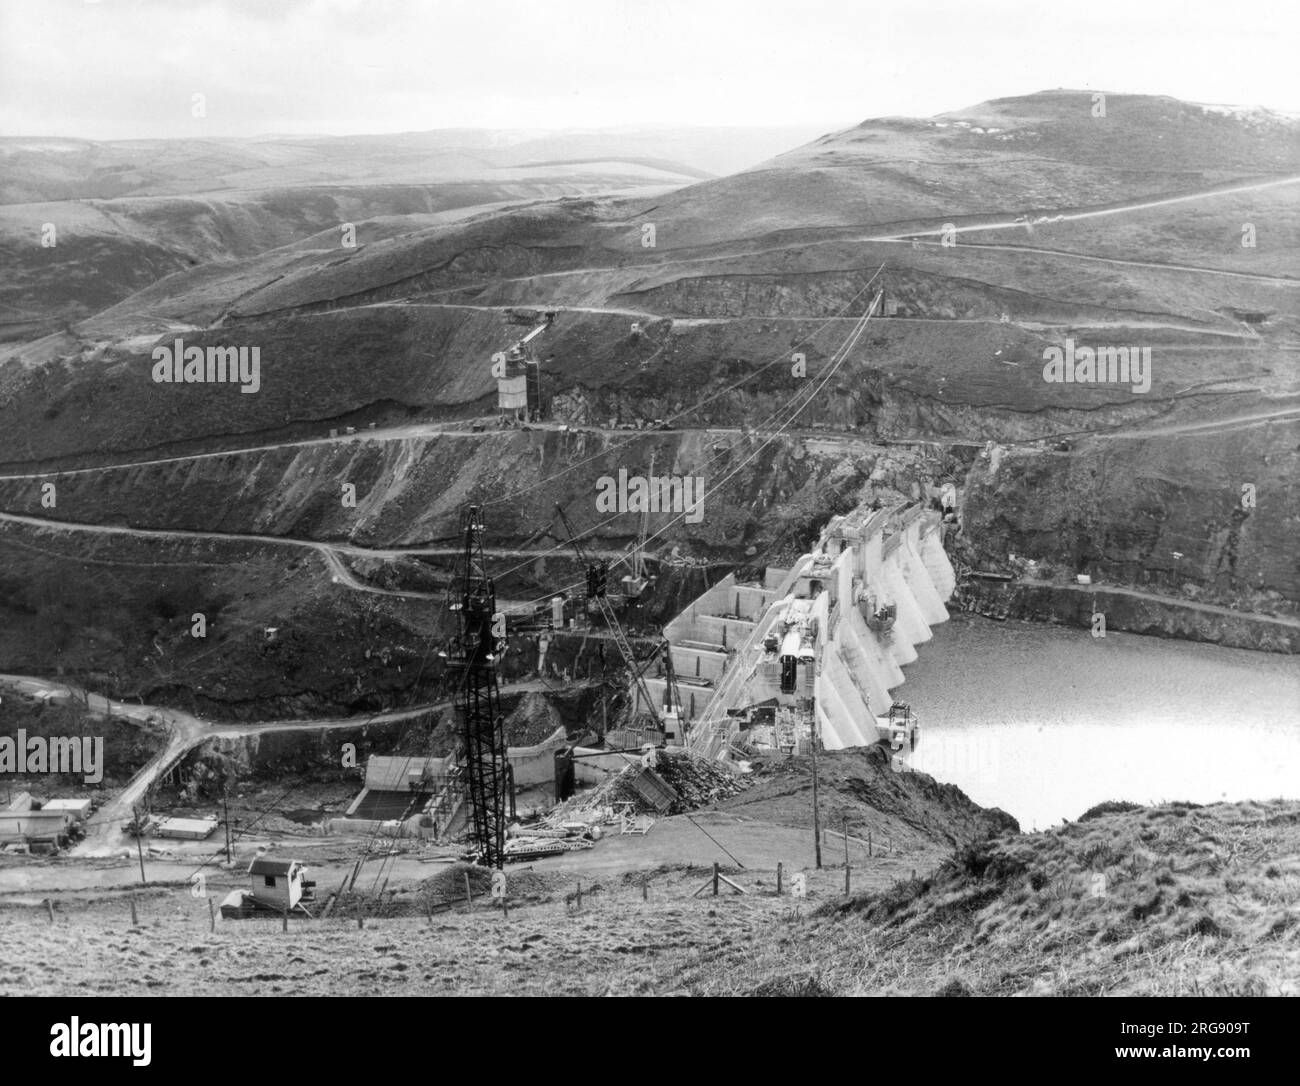 Der Clywedog Dam nähert sich der Fertigstellung, Montgomeryshire, Wales. Es wurde gebaut, um den Wasserfluss im Fluss Severn zu regulieren. Stockfoto